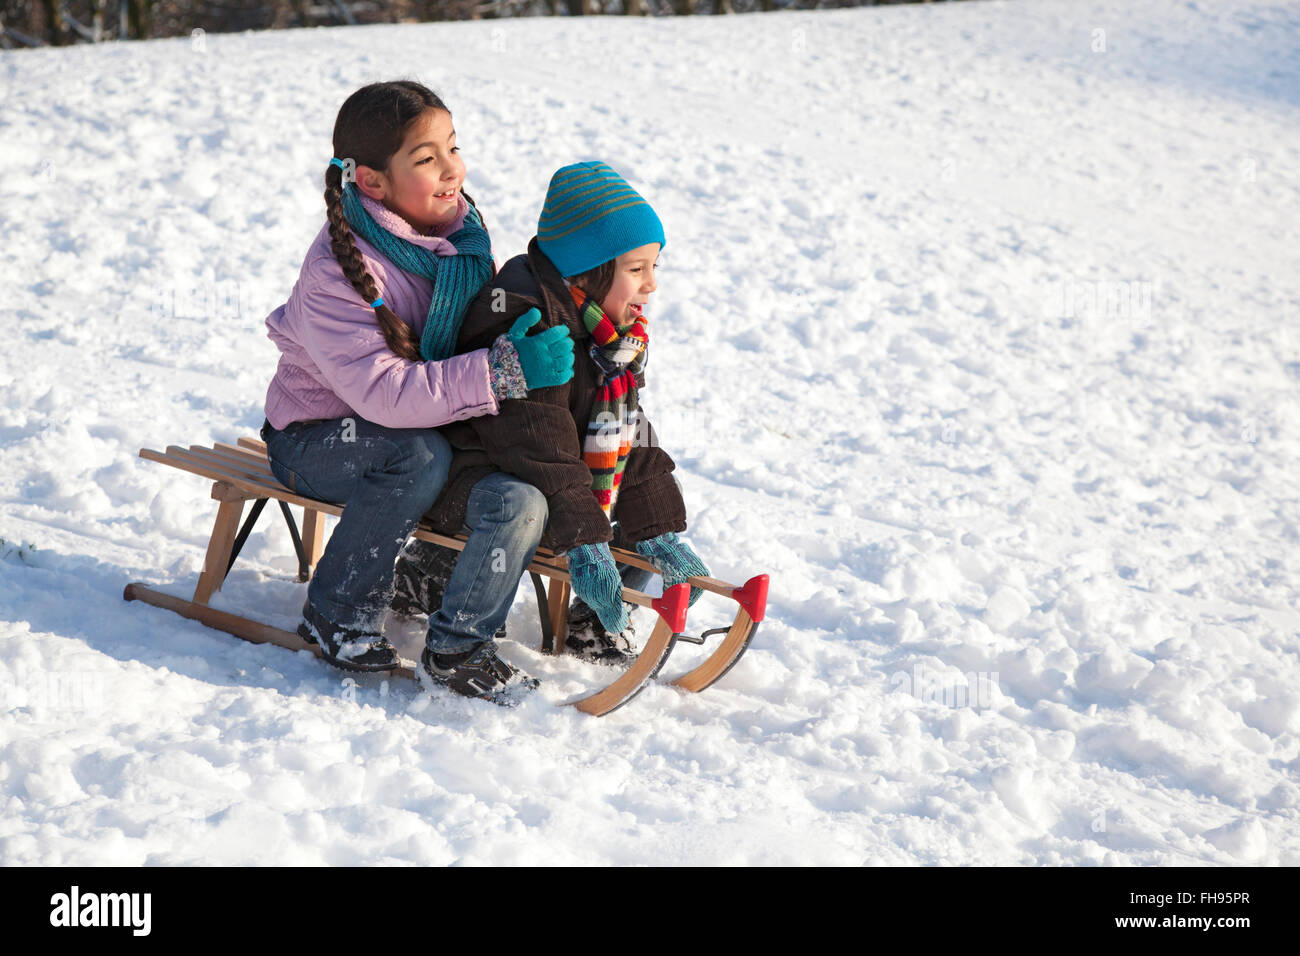 Deux enfants sur une luge dans la neige Banque D'Images